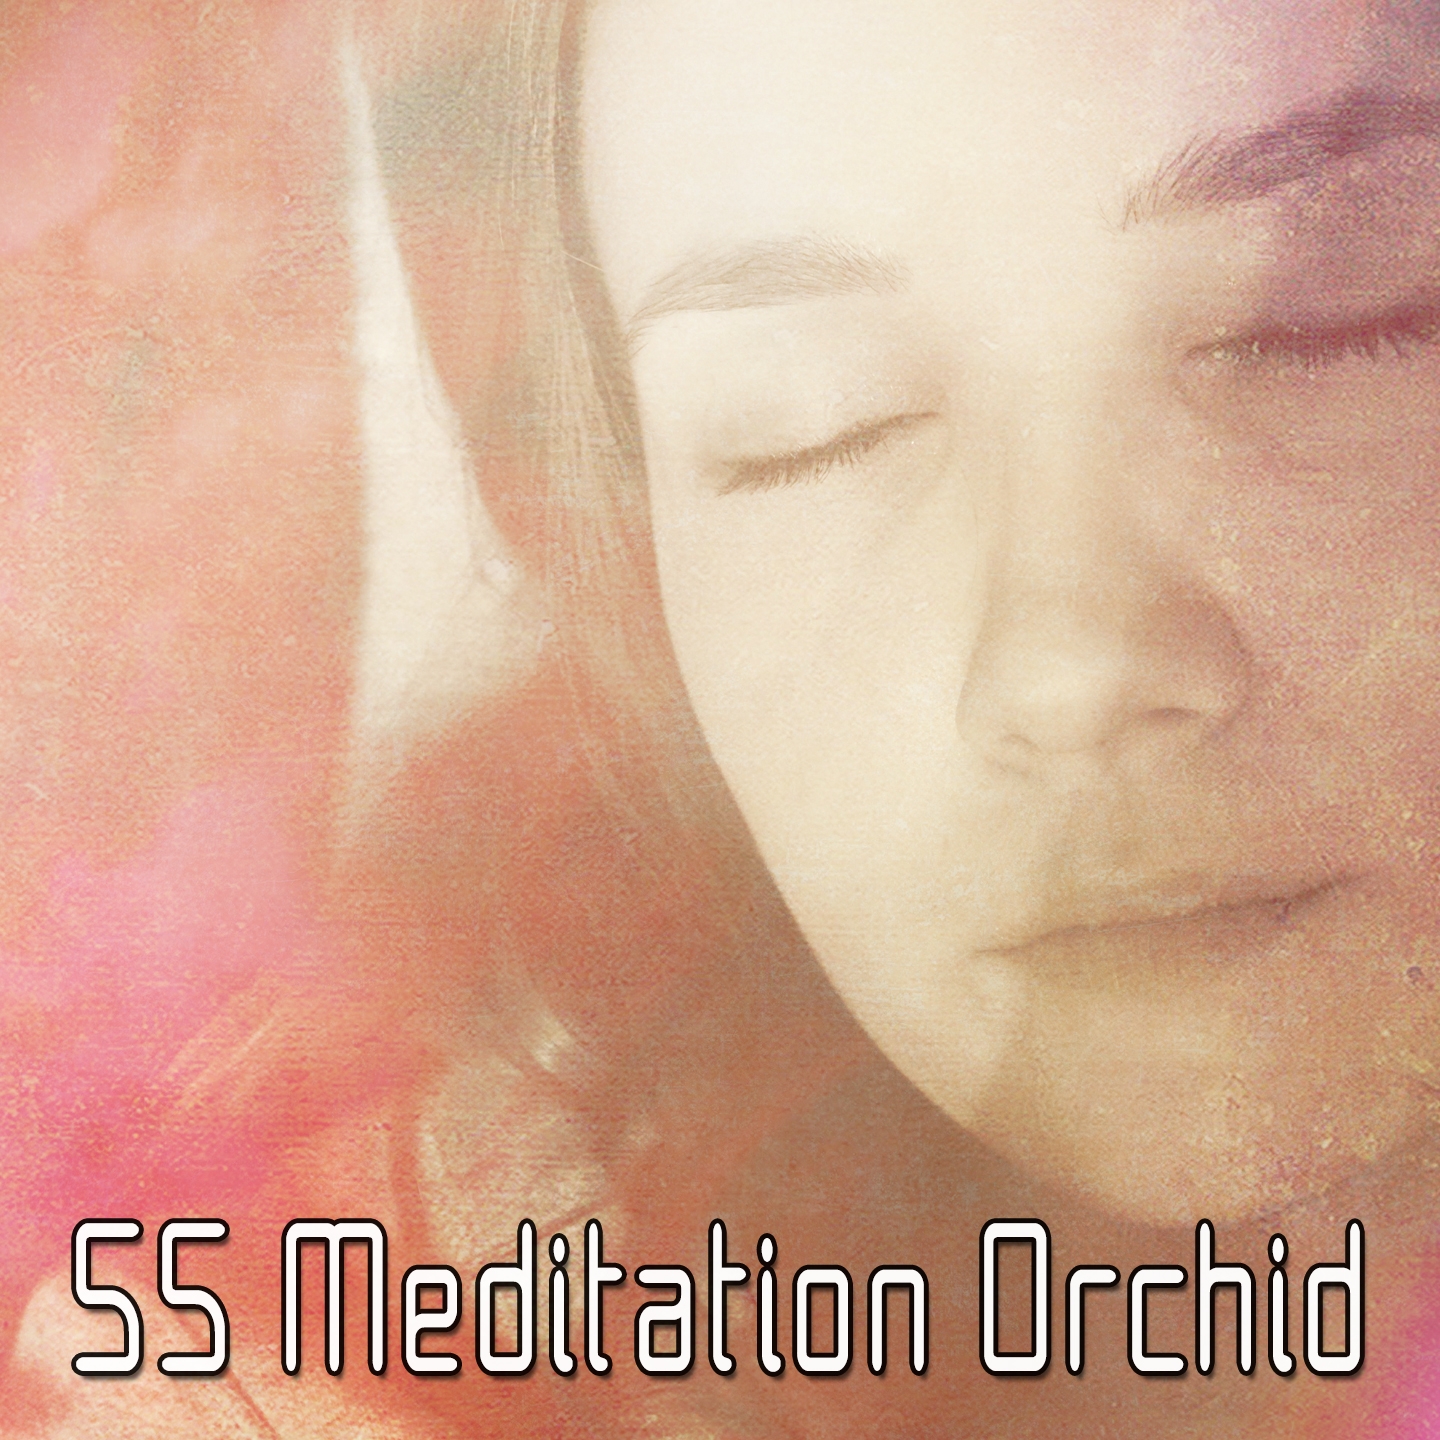 55 Meditation Orchid